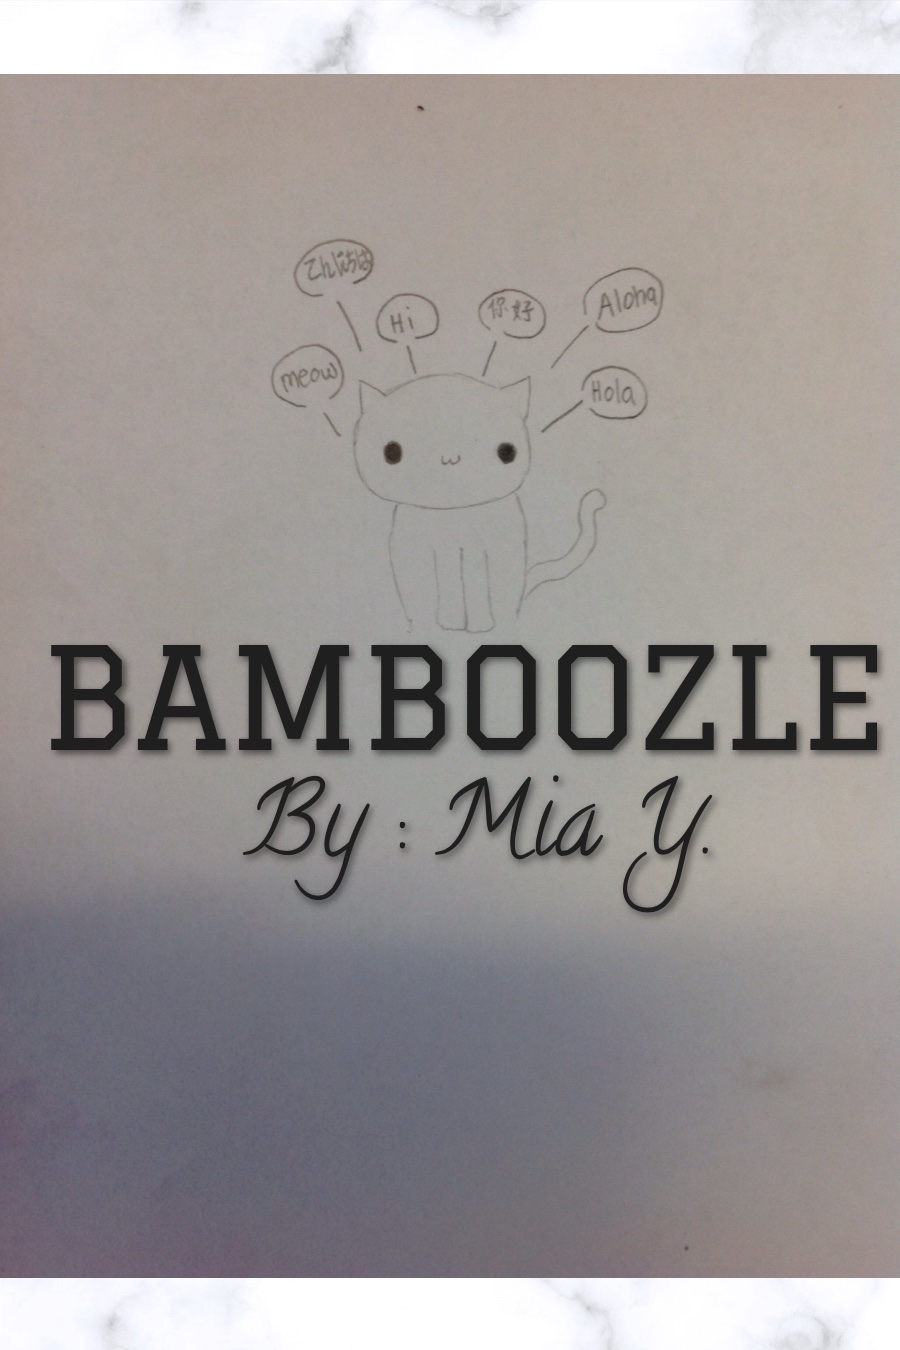 Bamboozle by Mia Y